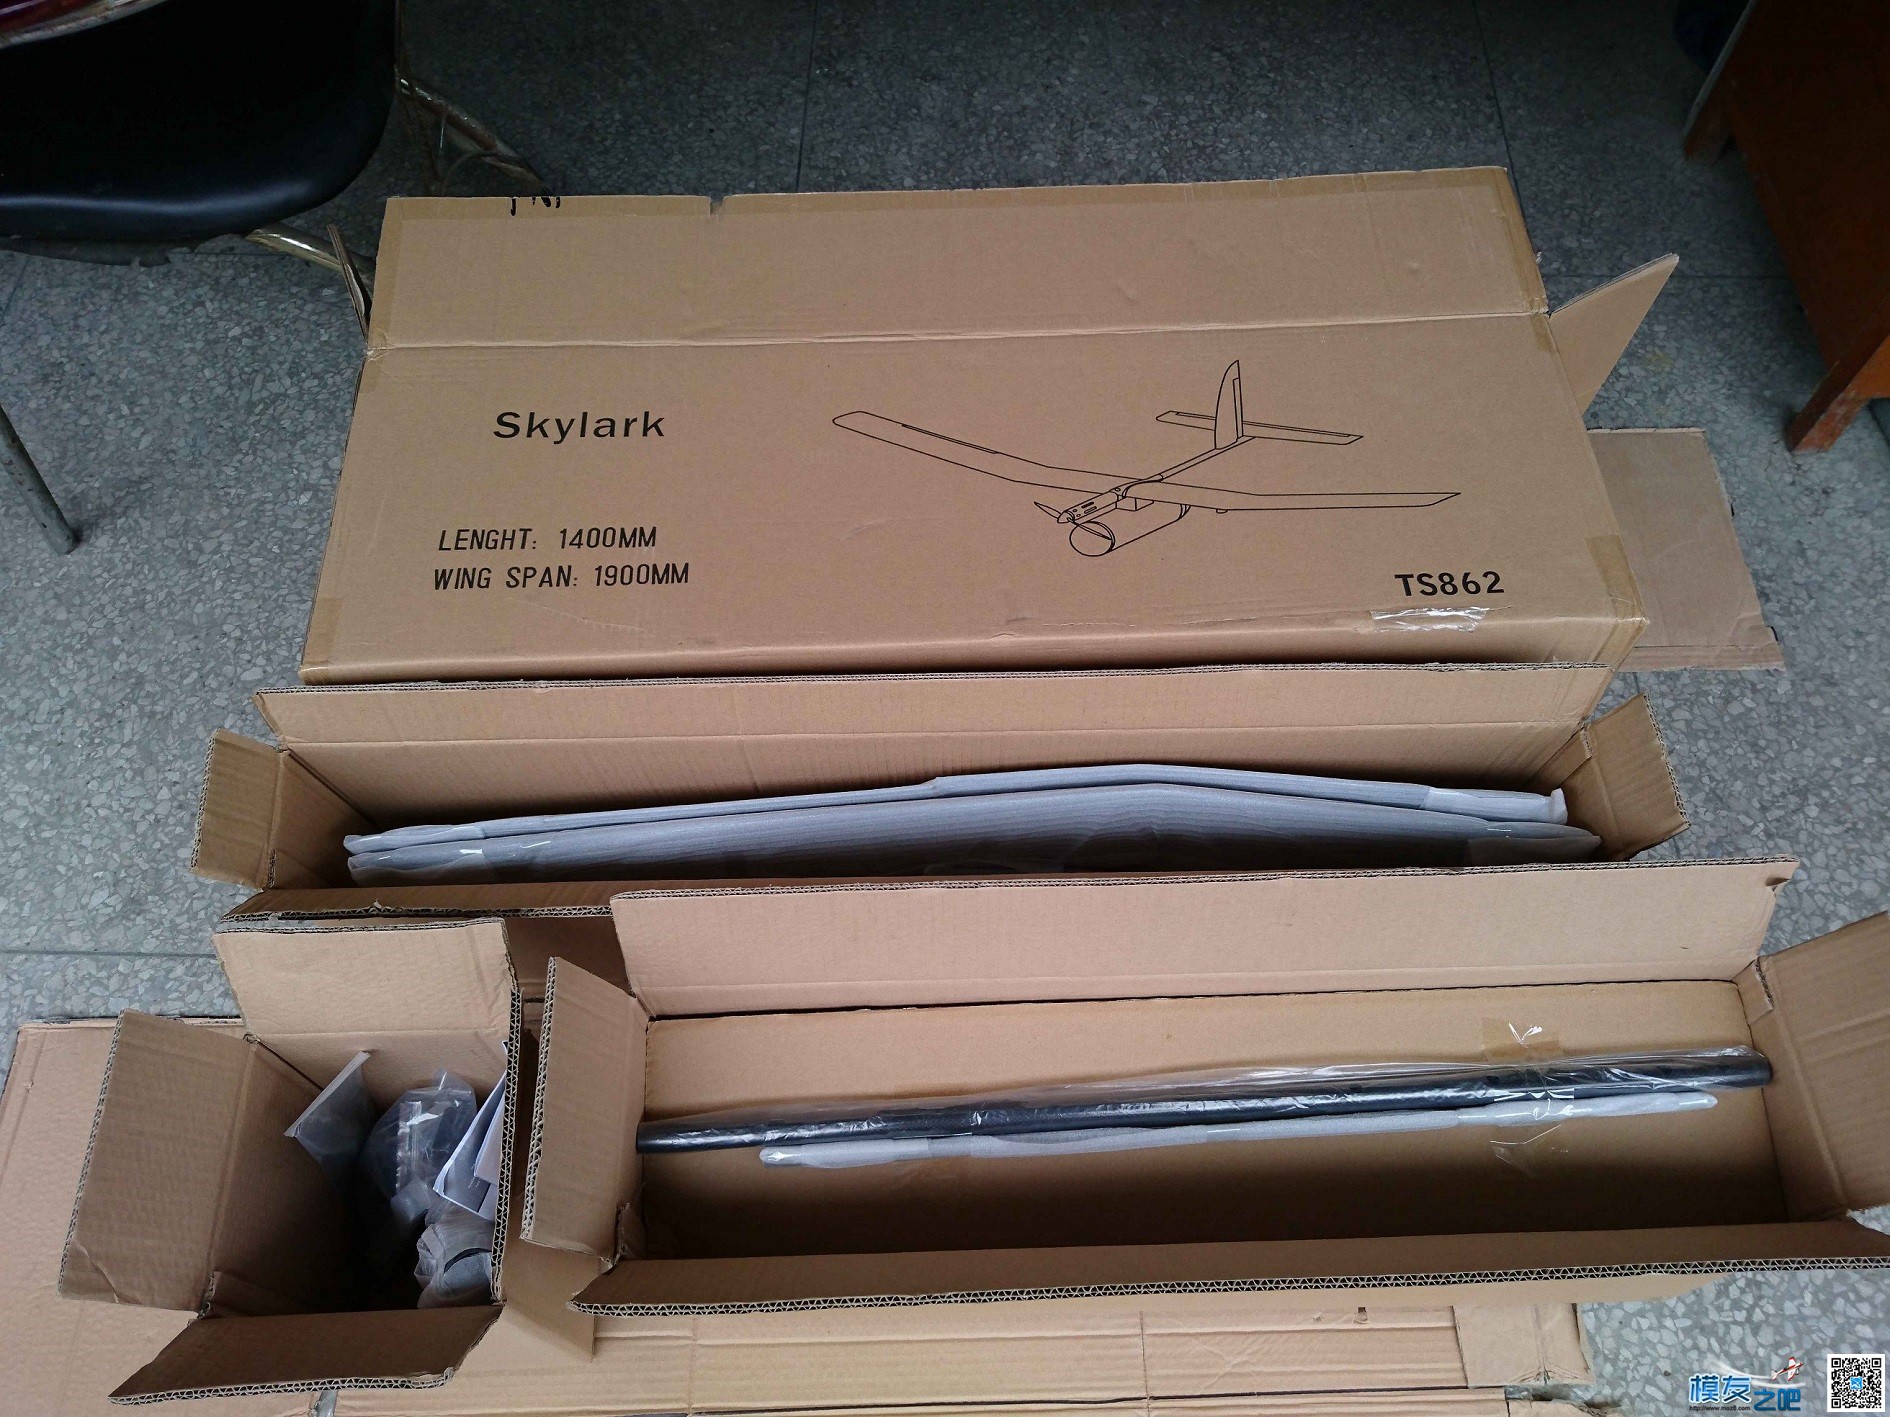 天盛模型国内首款机型 Skylark 全新概念固定翼FPV载机 开箱贴 无人机,模型,固定翼,舵机,电调 作者:模友之吧 7245 